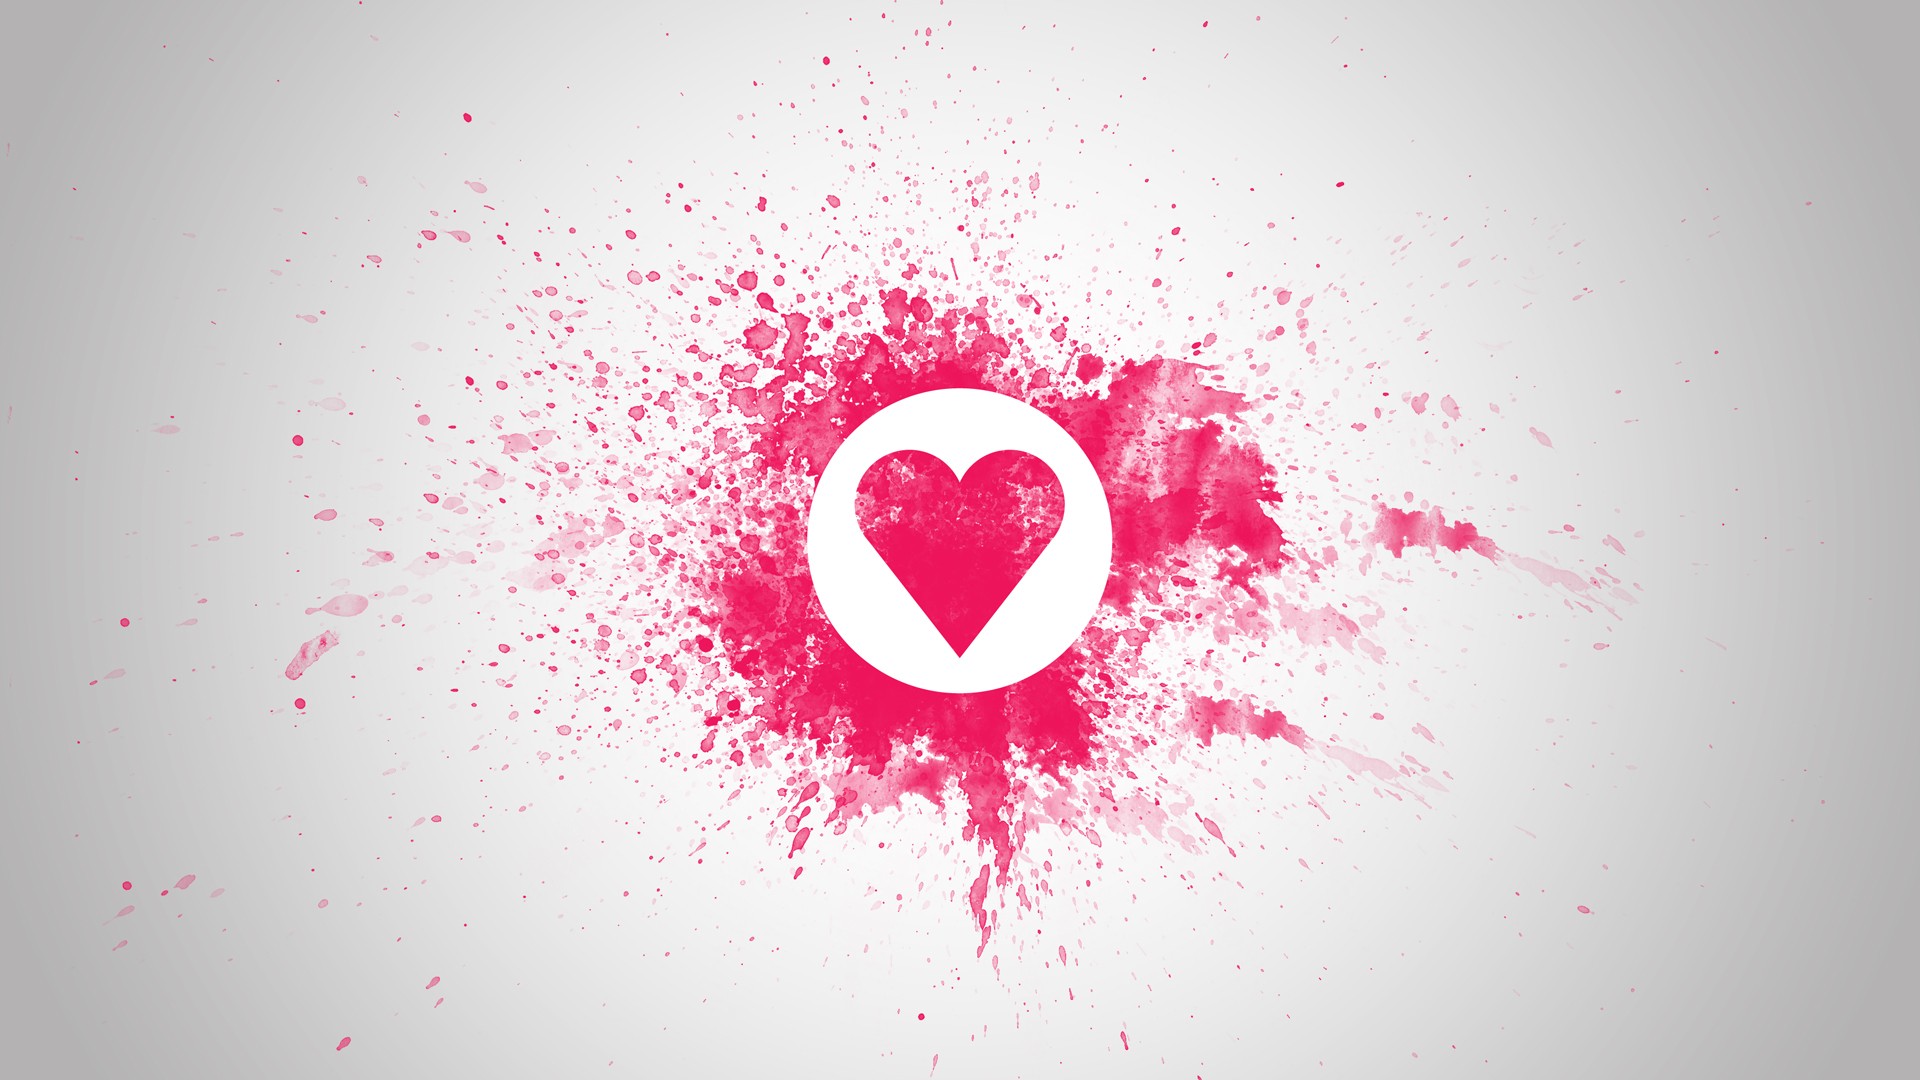 43+] Heart Wallpapers for Facebook - WallpaperSafari